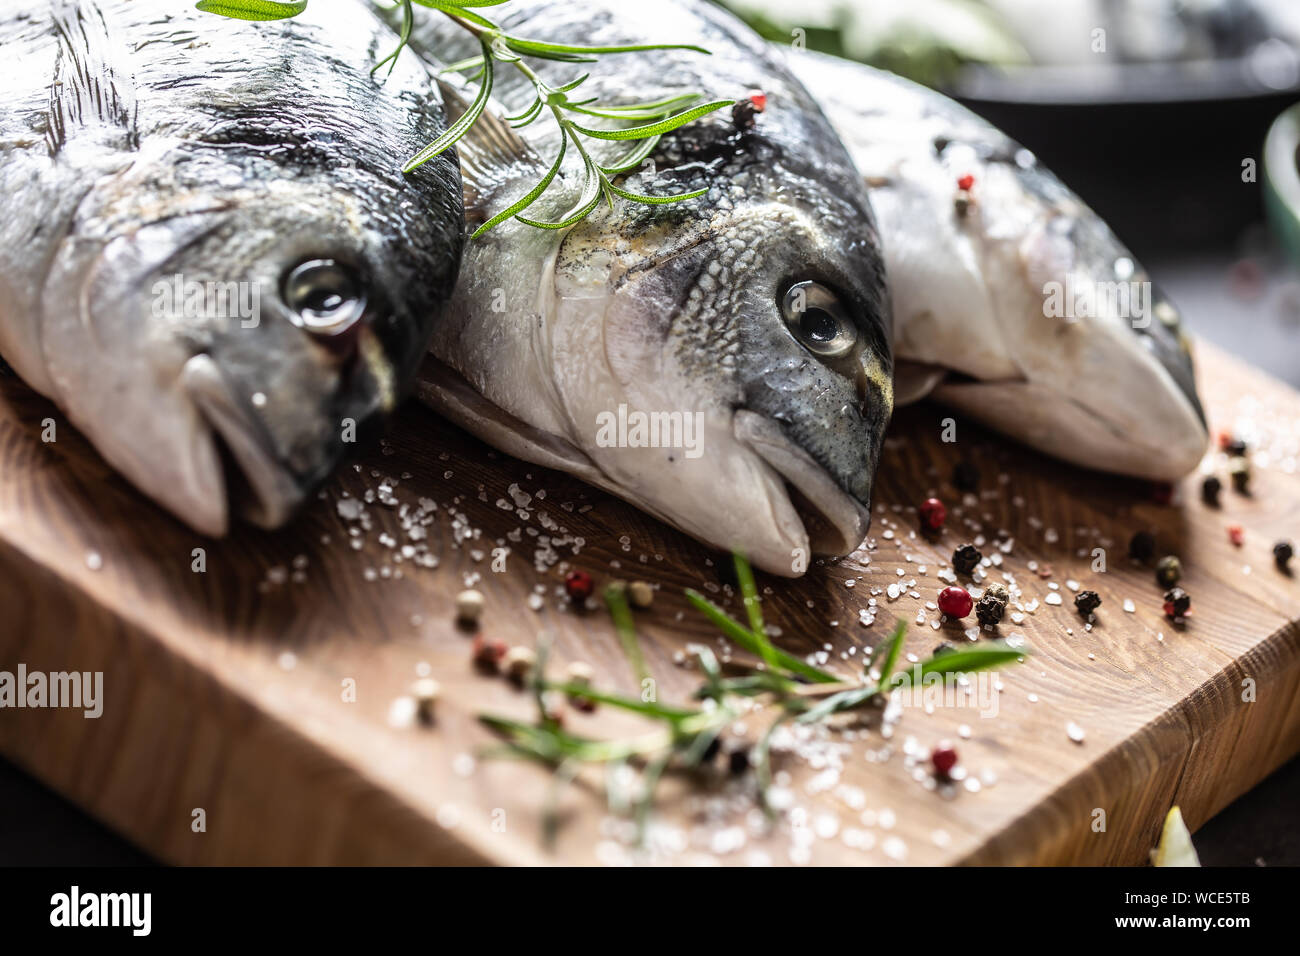 Mediterrane Fischgerichte Dorade mit Gewürzen, Salz, Kräuter, Knoblauch und Zitrone. Gesunde Meeresfrüchte. Konzept der gesunde Lebensmittel Stockfoto